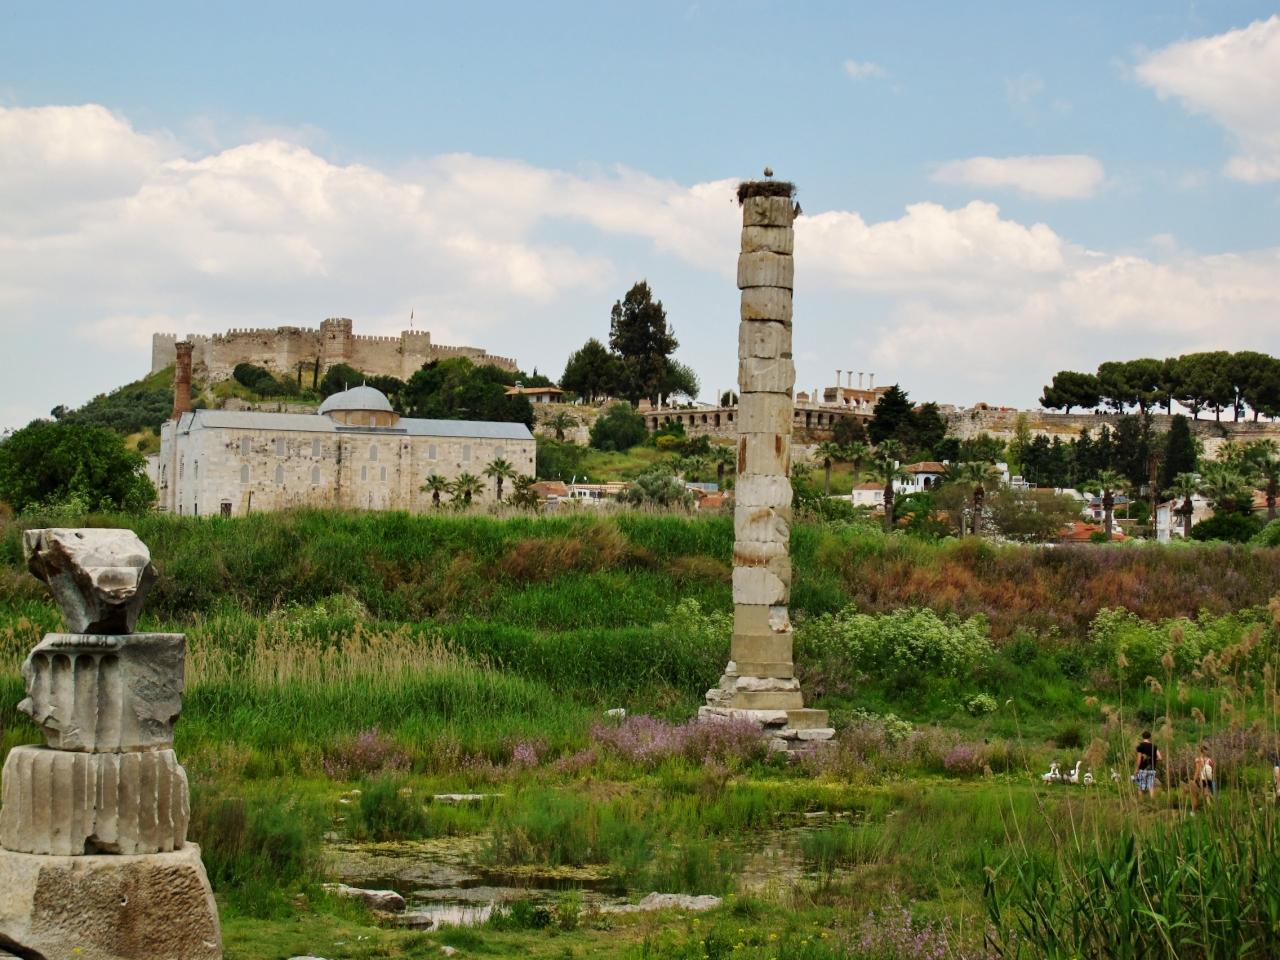 トルコ45 エフェス遺跡ｆ アルテミス神殿の遺構は柱一本 世界七不思議の謎は エフェス遺跡周辺 トルコ の旅行記 ブログ By マキタンさん フォートラベル